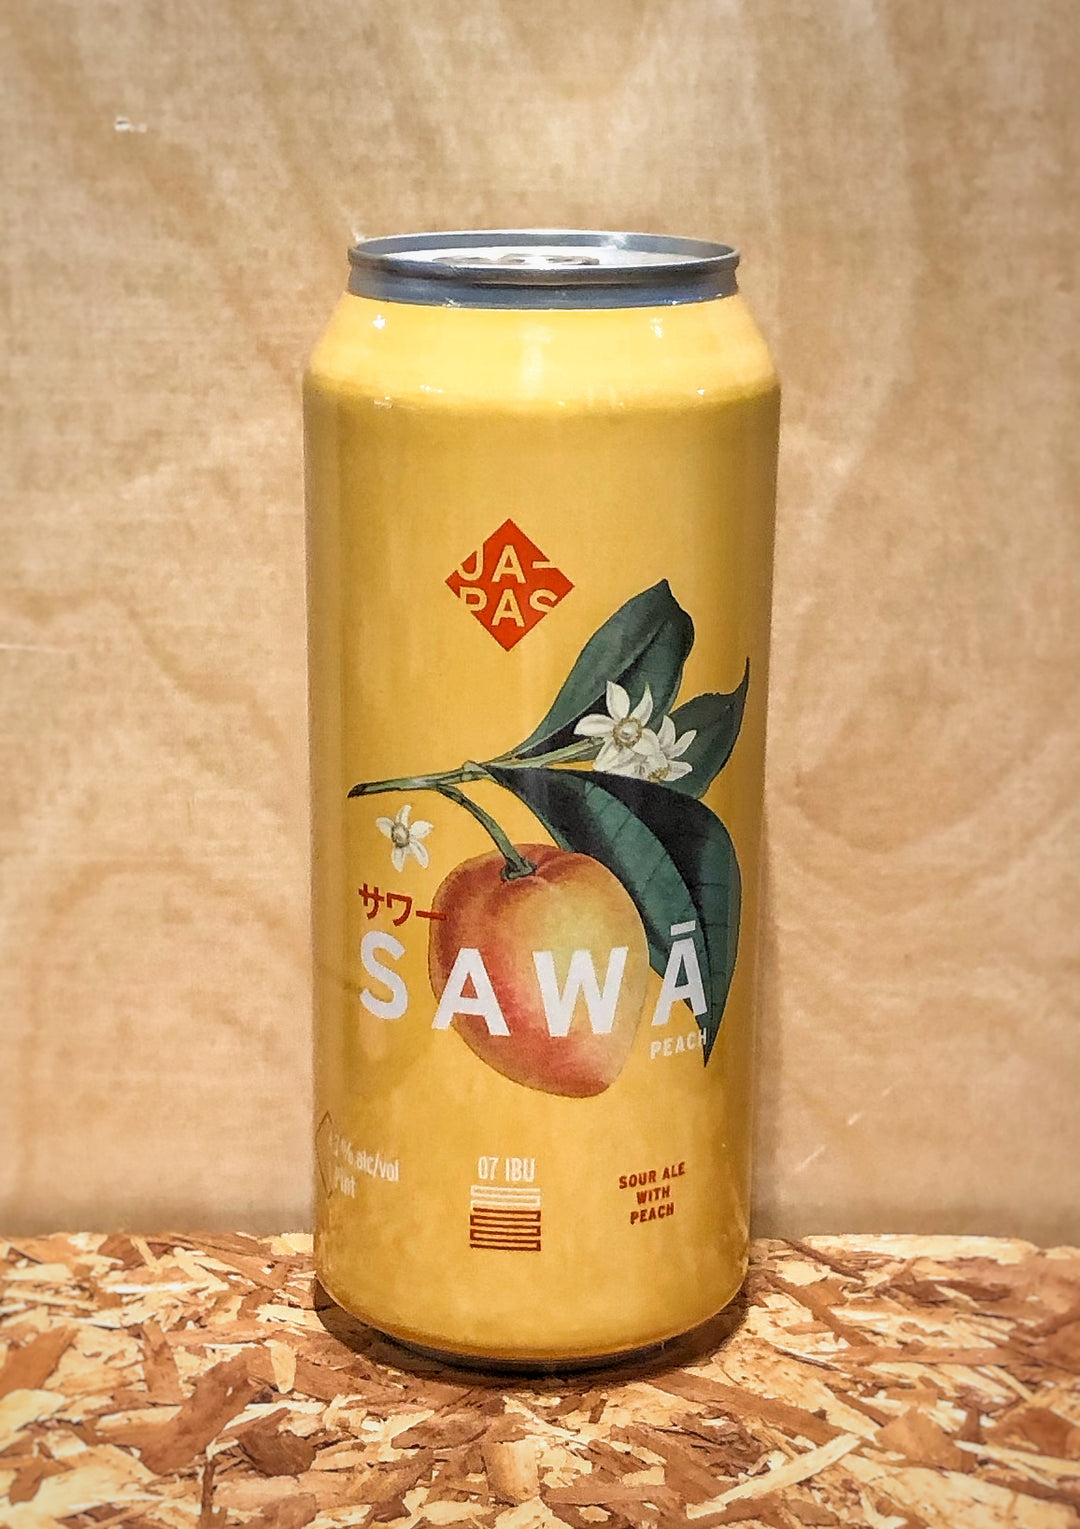 Japas Cervejaria 'Sawa' Sour Ale with Peaches (Brazil)